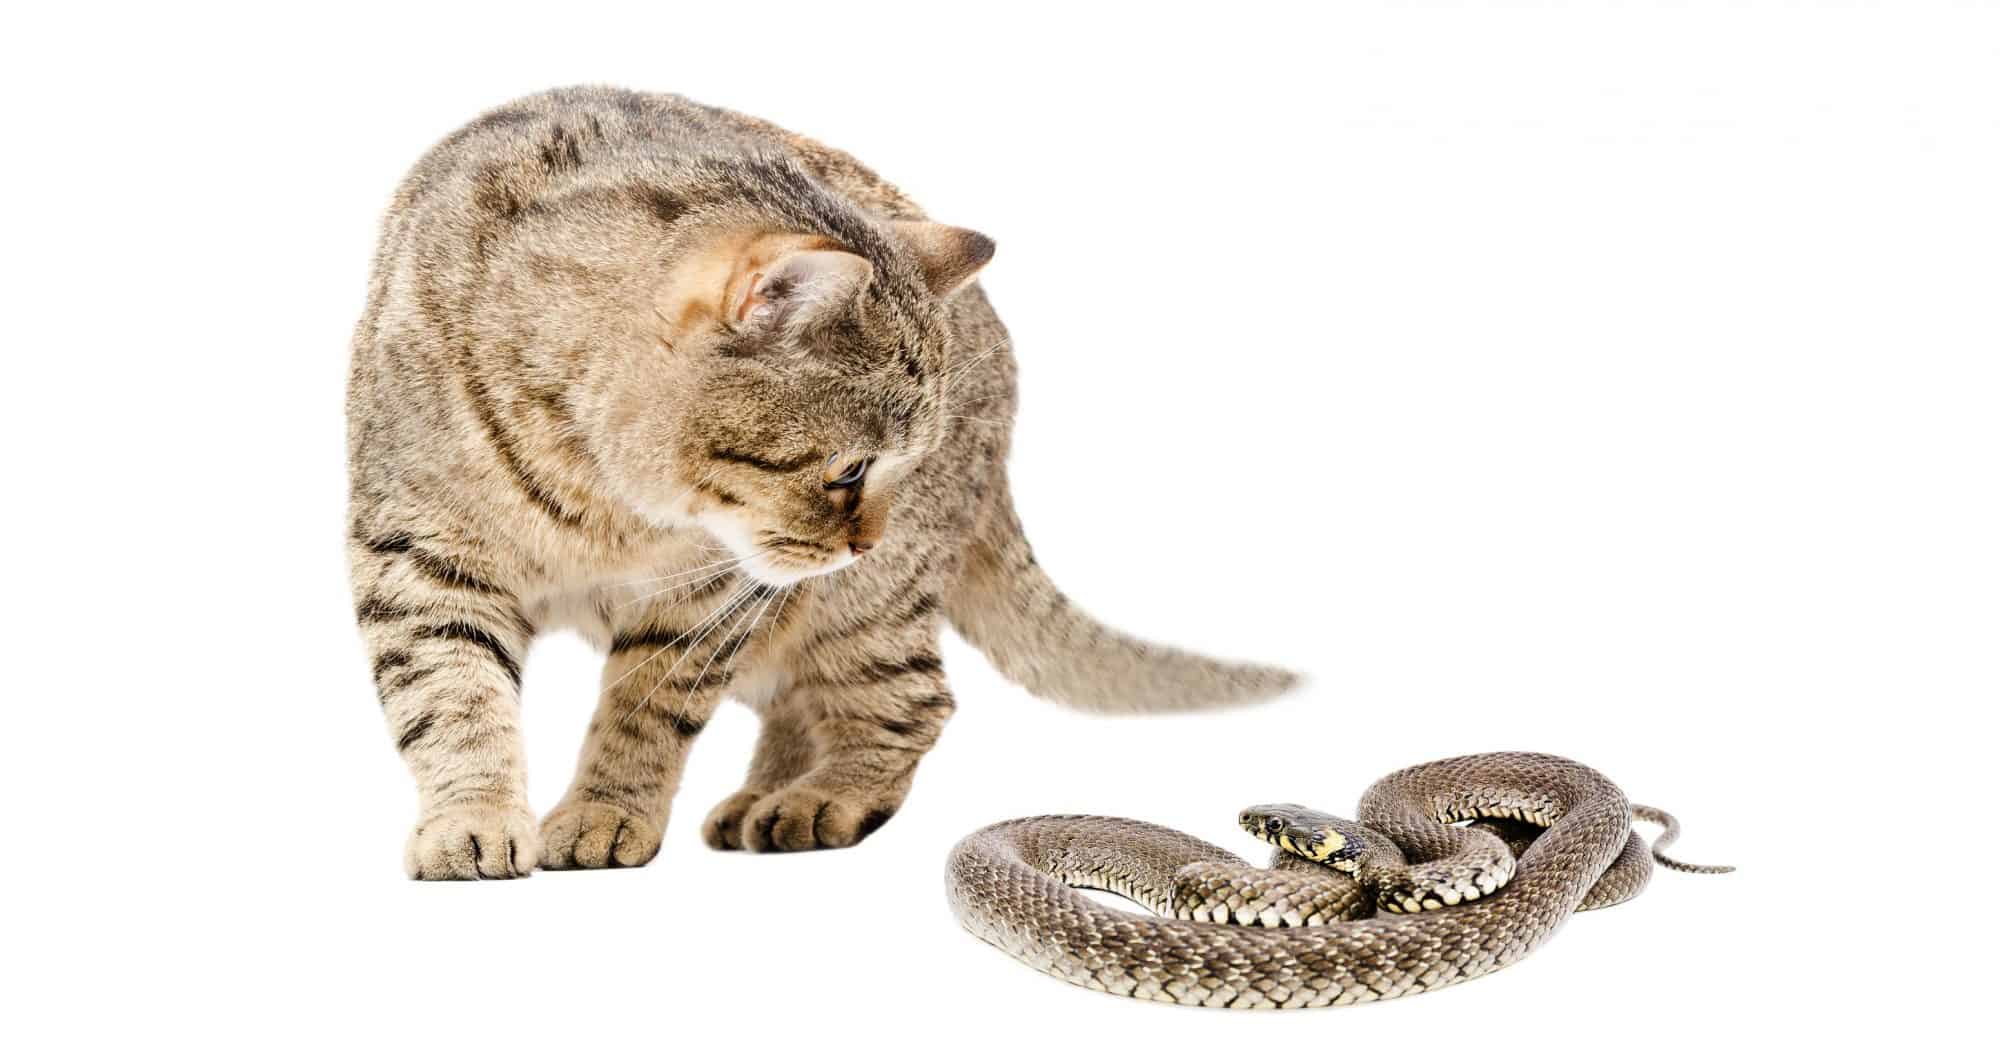 Auburn cat and snake.